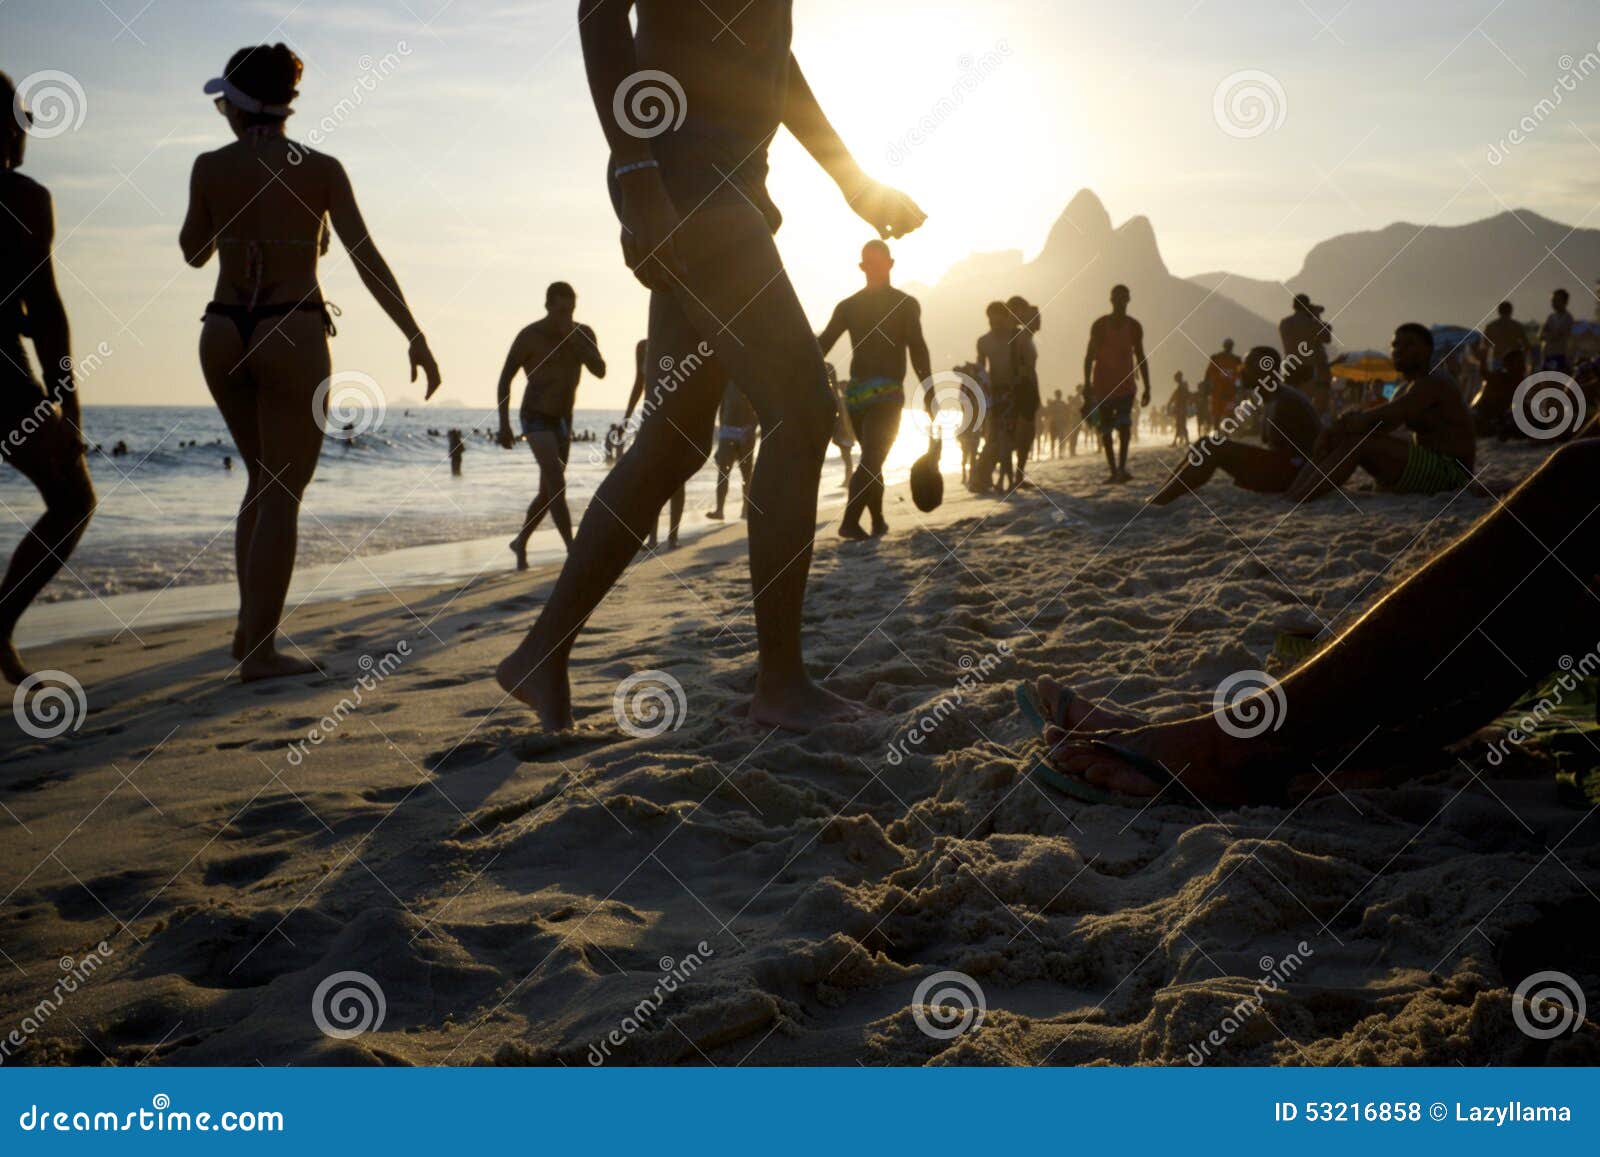 Man Girl Seeking Rio De Janeiro